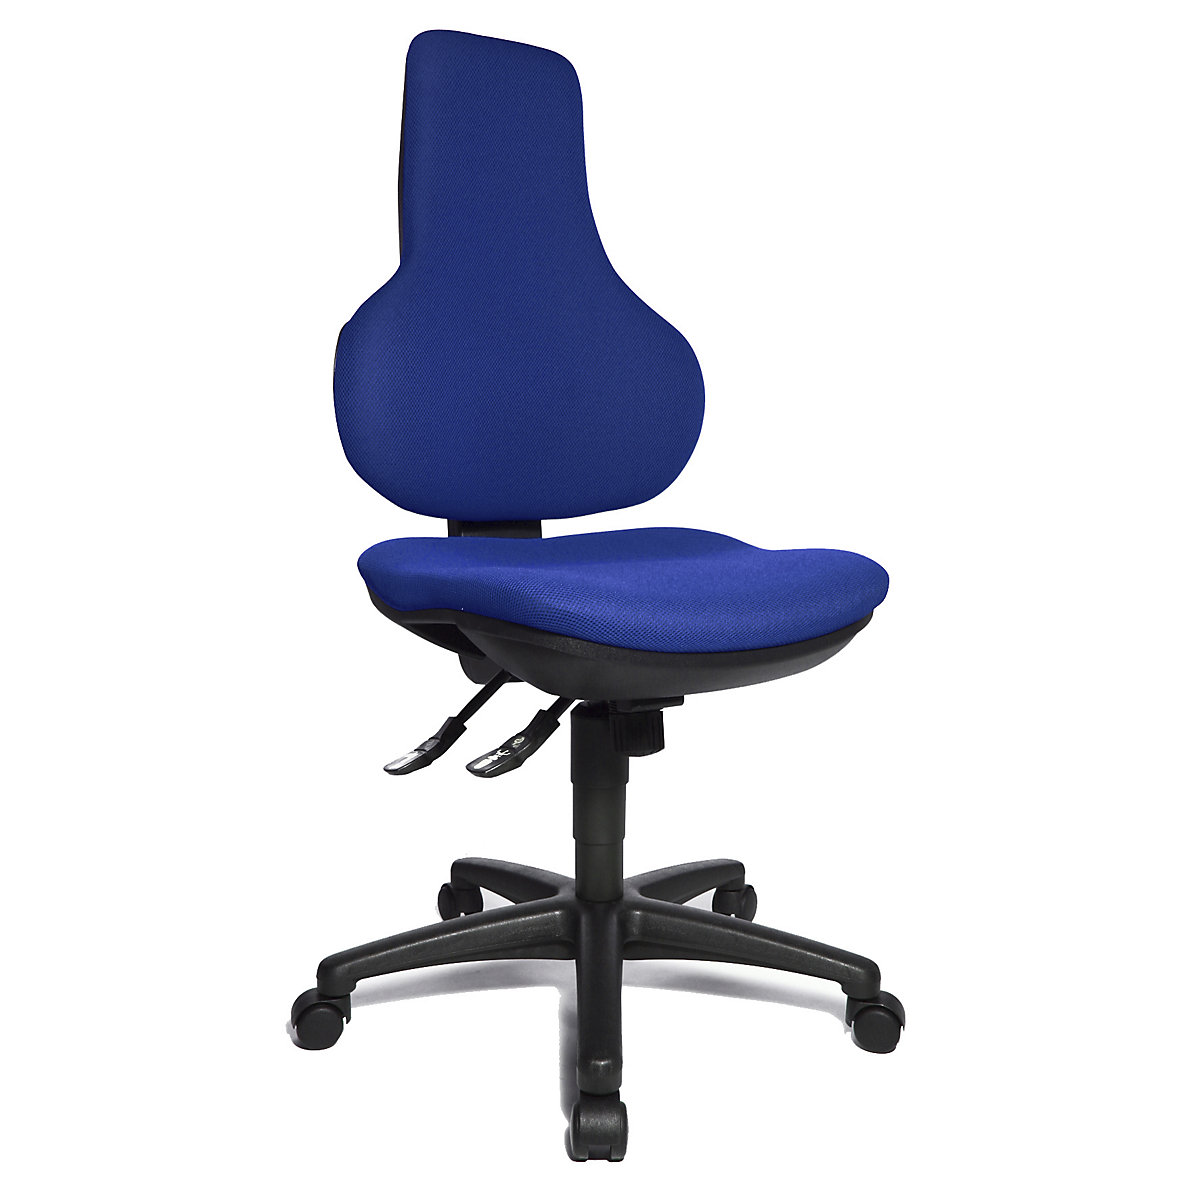 ERGO POINT SY office swivel chair – Topstar